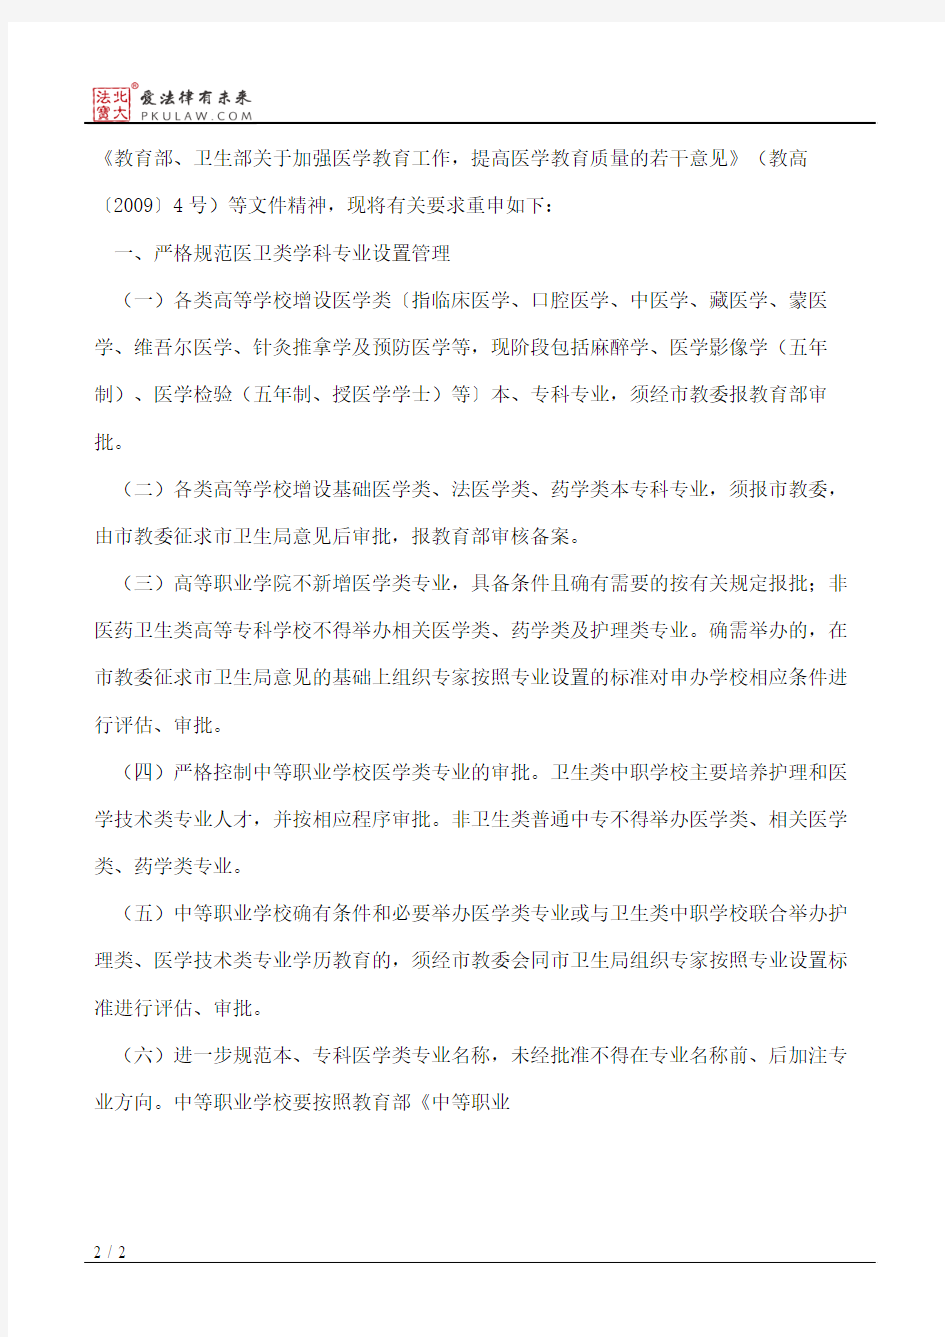 重庆市教育委员会、重庆市卫生局关于进一步规范高等学校和中等职